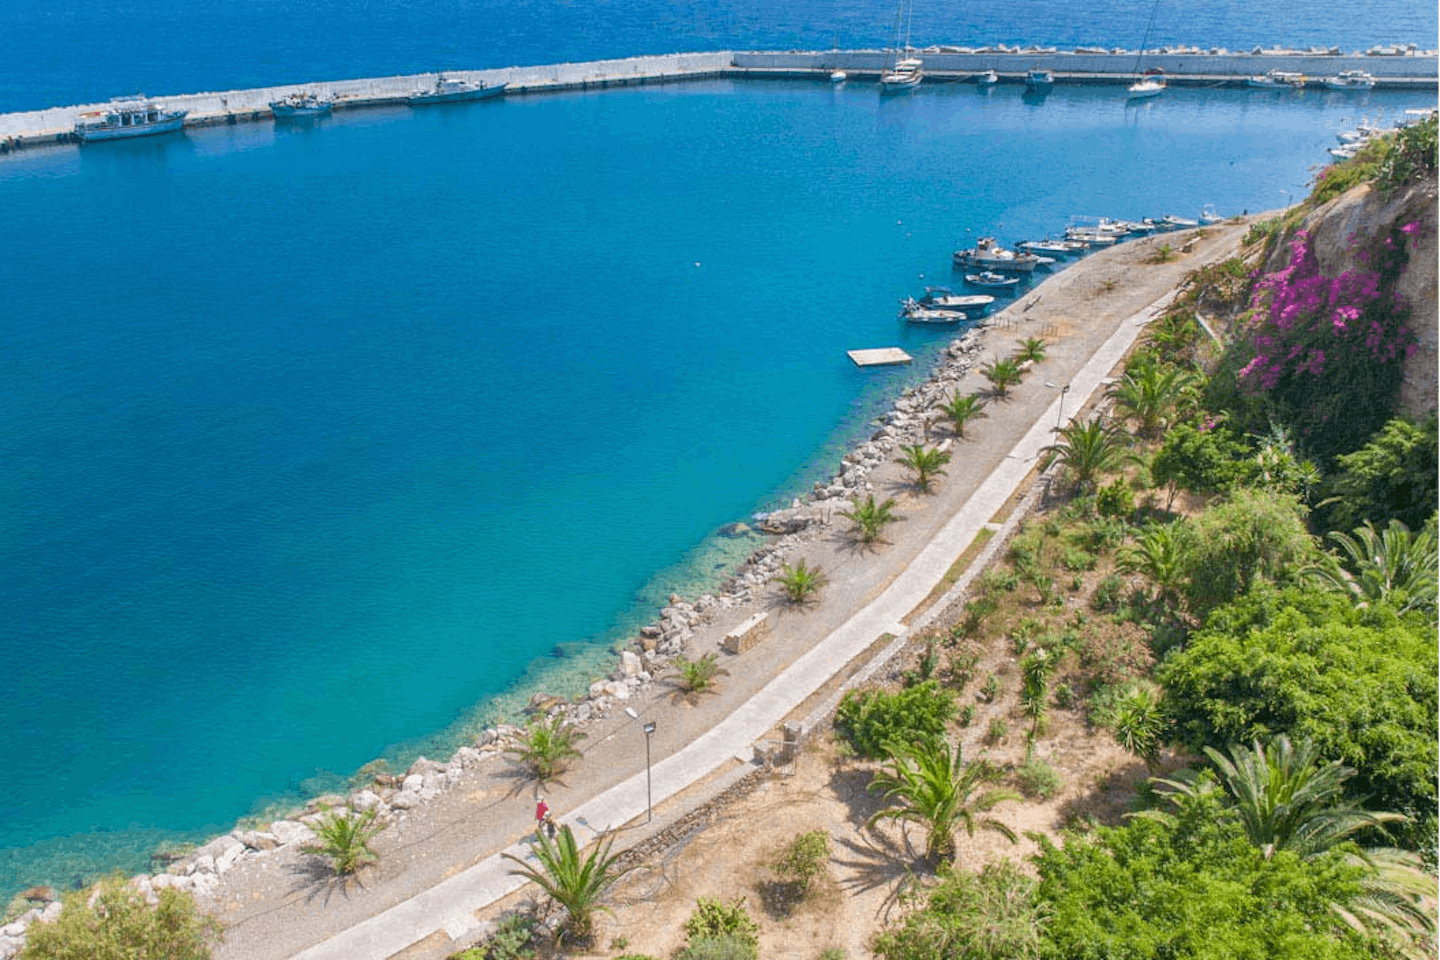 Camping No Problem - Mittelmeer in der Nähe des Campingplatzes mit Bootanleger